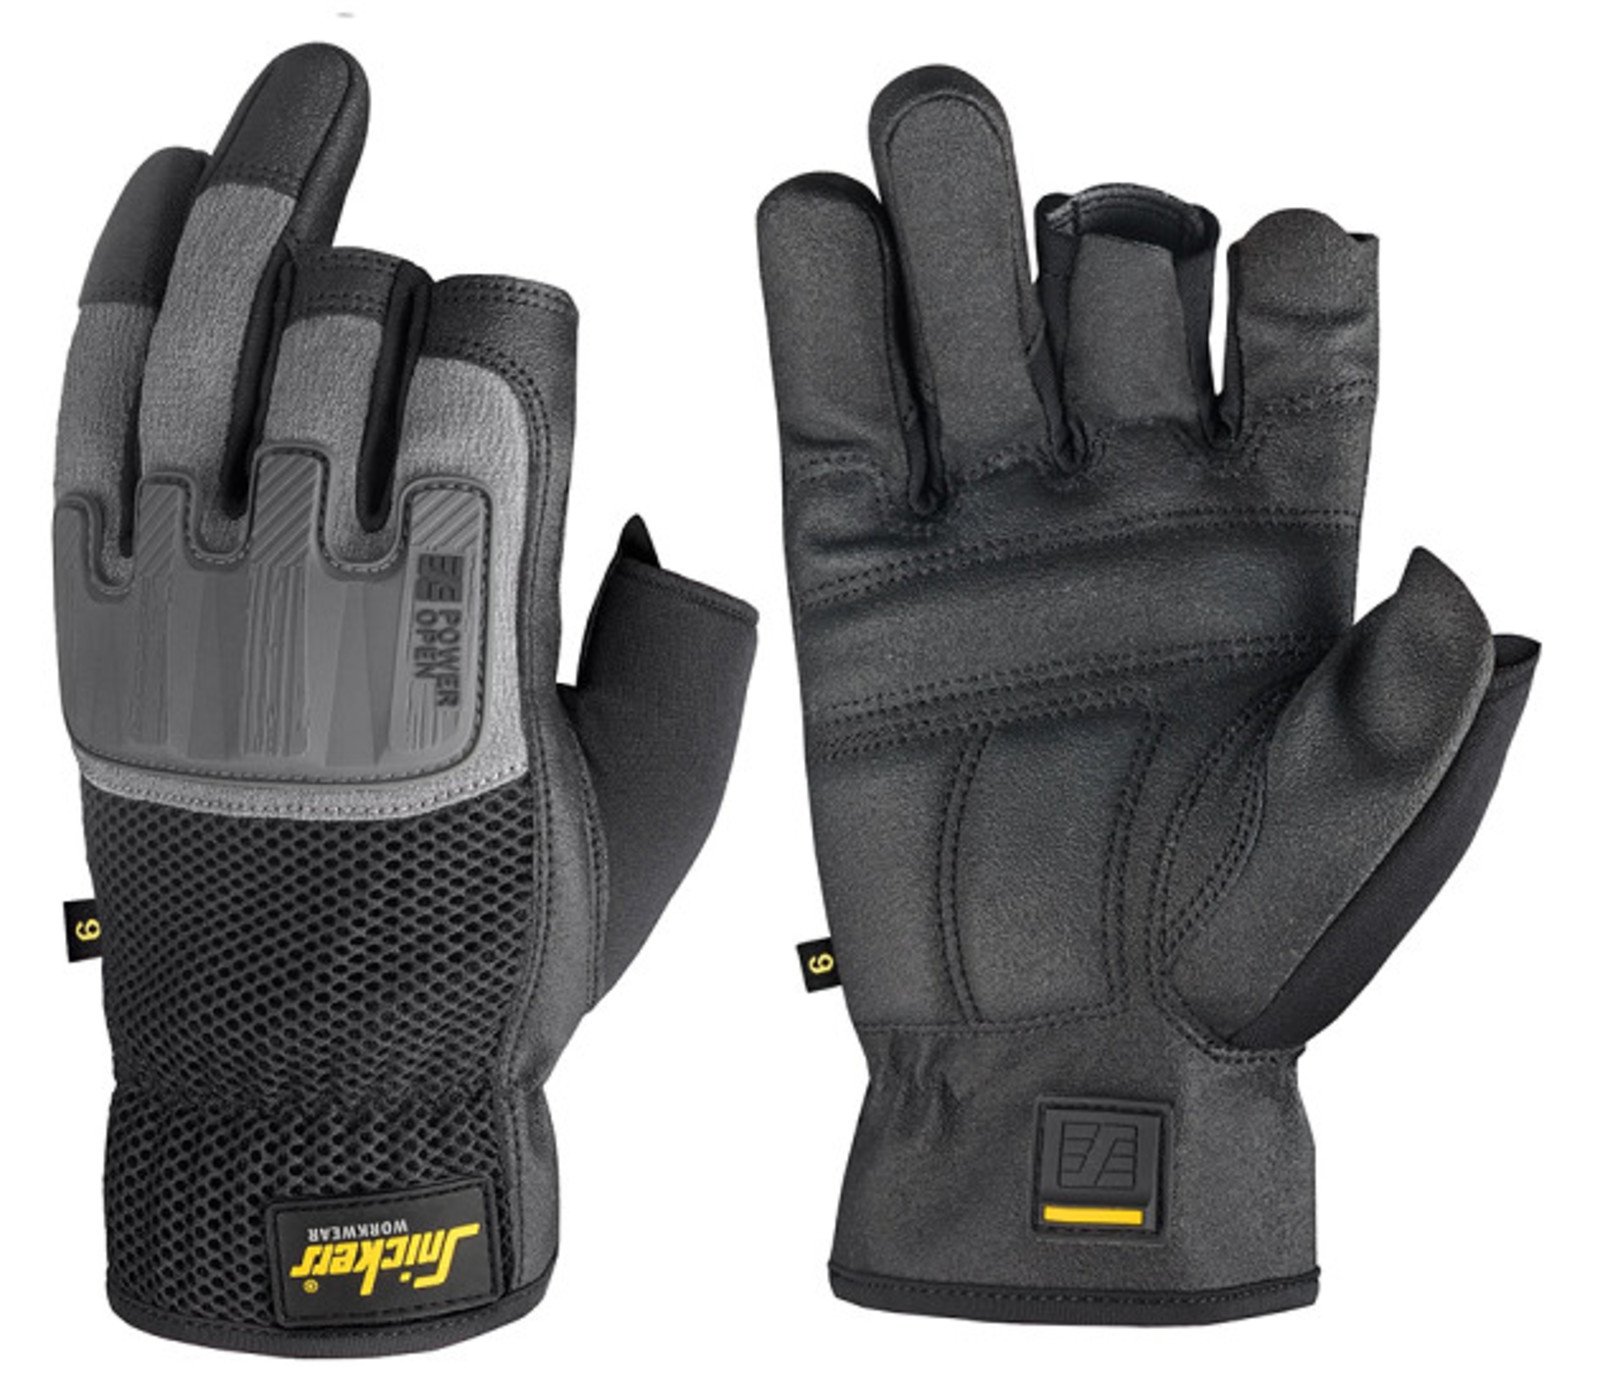 Ochranné rukavice Snickers® Power Open bez prstov - veľkosť: 7/S, farba: sivá/čierna